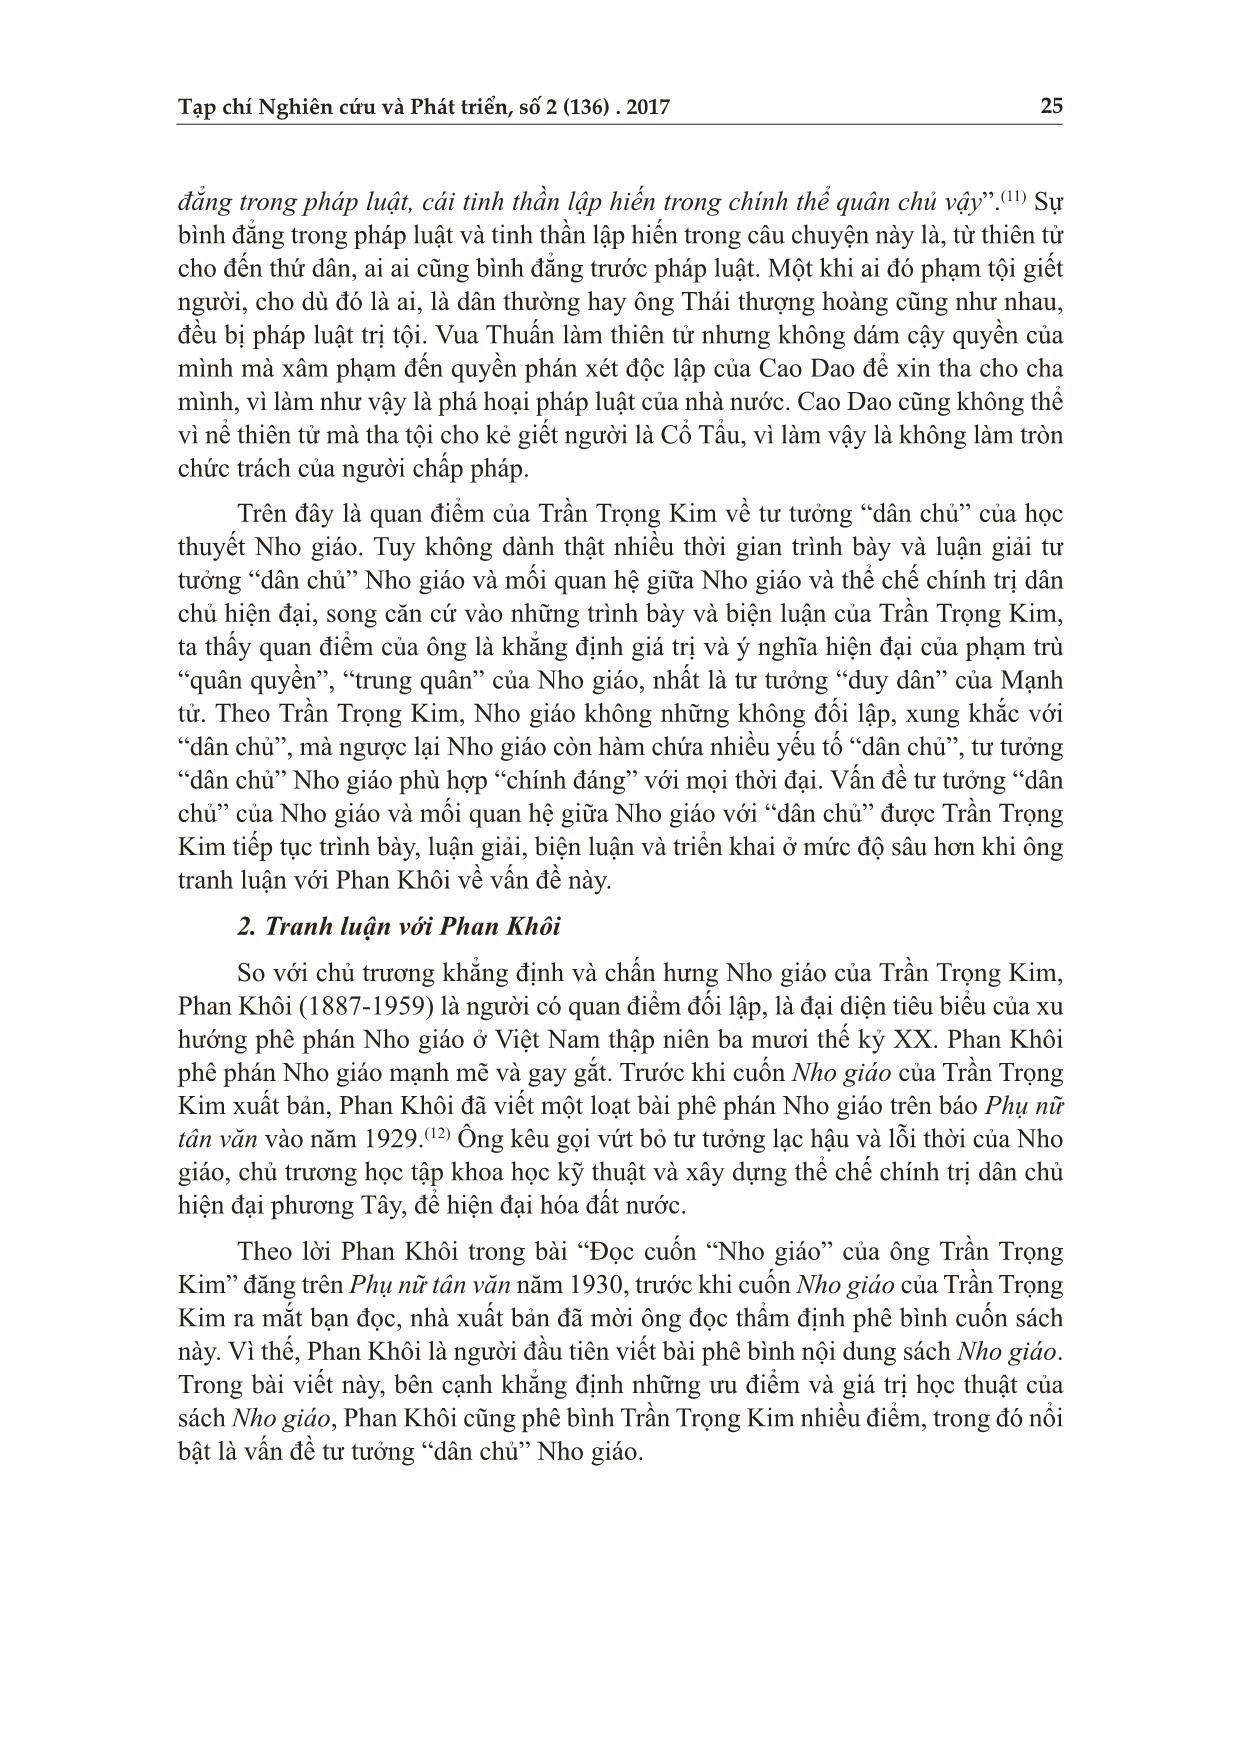 Nho giáo và tư tưởng dân chủ (Luận về tư tưởng “dân chủ” Nho giáo của Trần Trọng Kim trong tác phẩm Nho giáo) trang 9